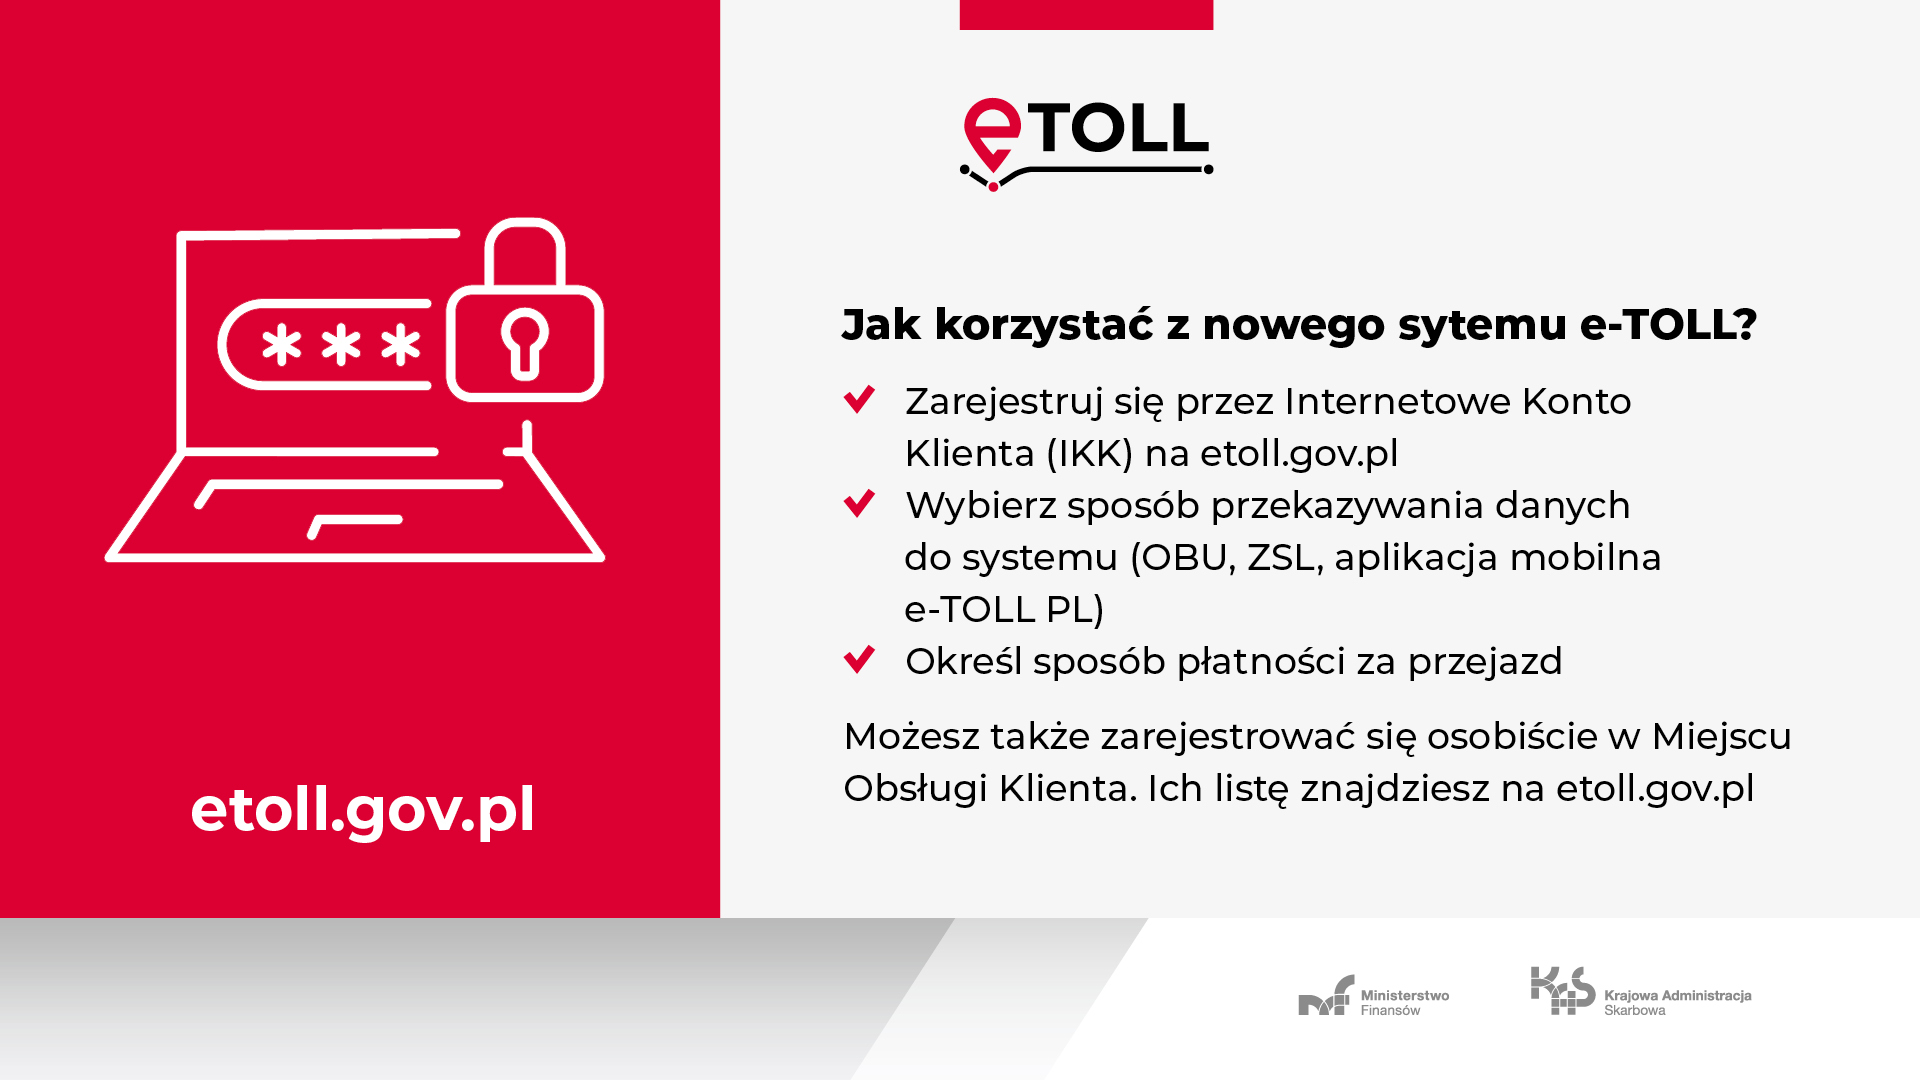 Jak skorzystać z nowego systemu e-TOLL ? - Zarejestruj się przez Internetowe Konto Klienta (IKK) na etoll.gov.pl; Wybierz sposób przekazywania danych do systemu (OBU,ZSL, aplikacja moblina e-TOLL PL); Określ sposób płatności za przejazd. Możesz także zarejestrować się osobiście w Miejscu Obsługi Klienta. Ich listę znajdziesz na etoll.gov.pl